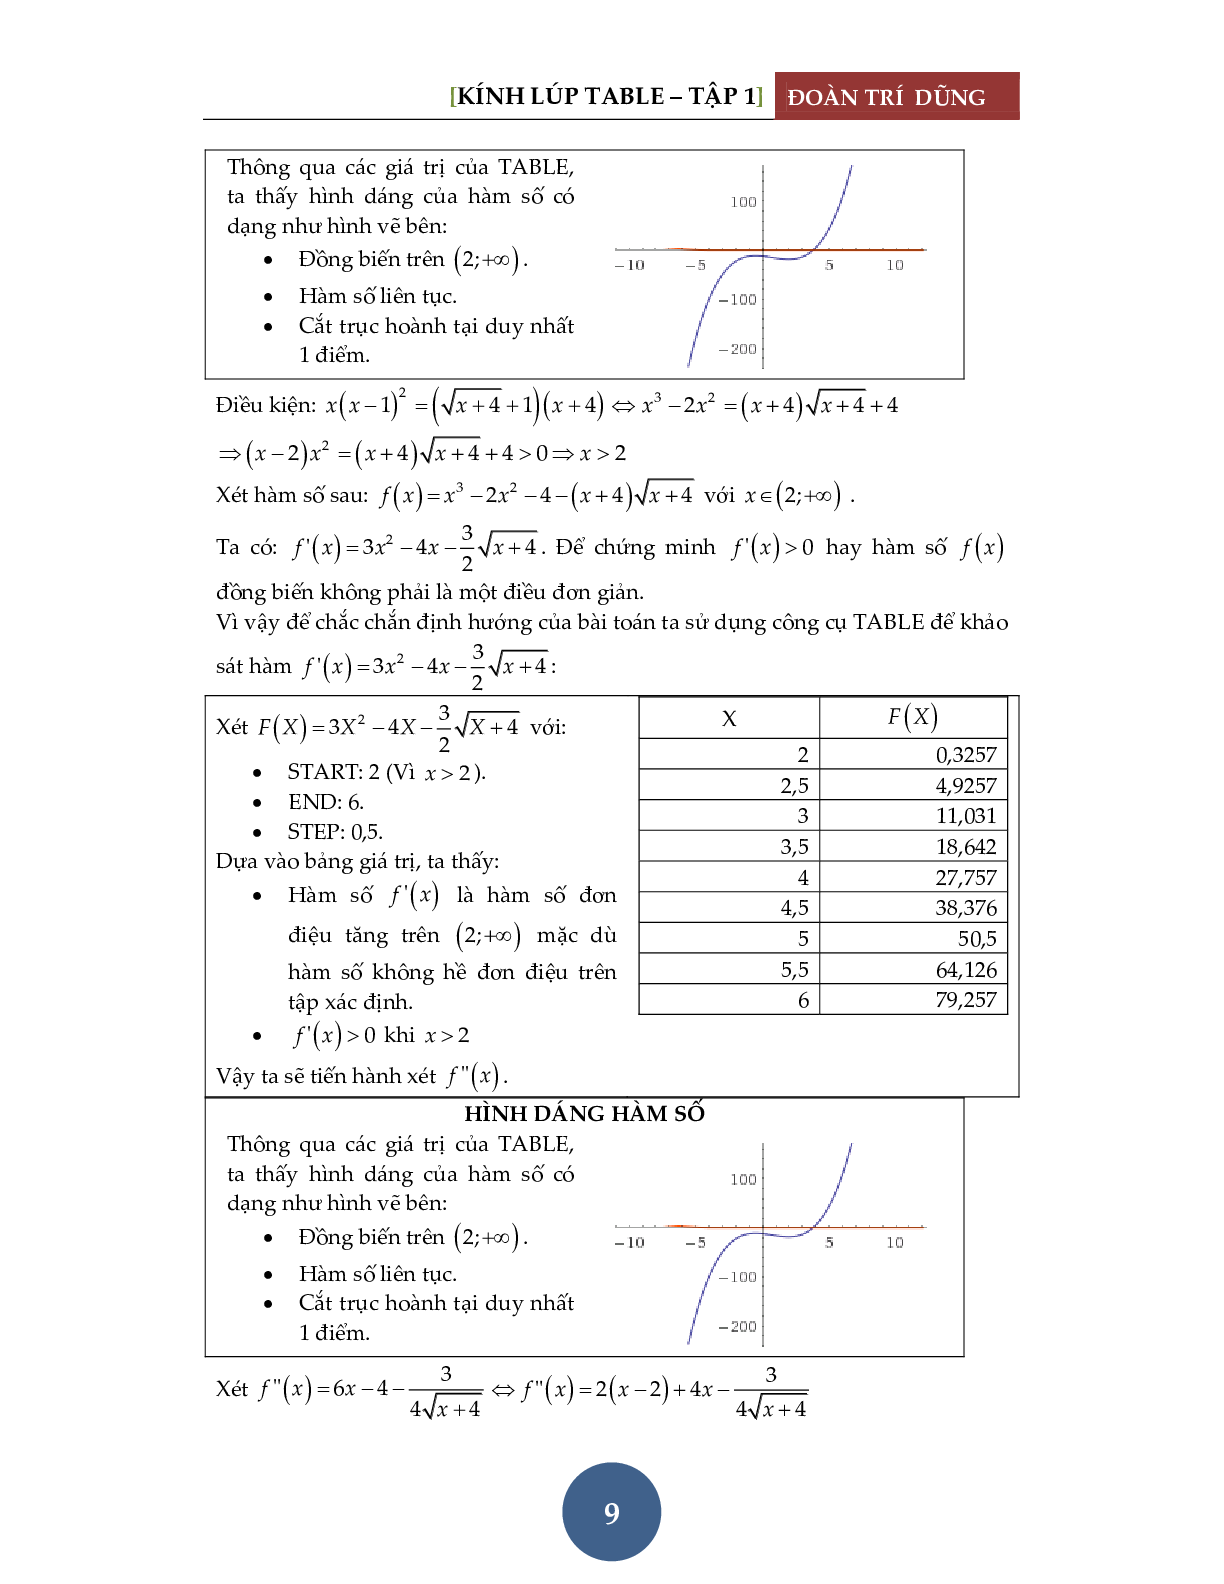 Giải phương trình bằng máy tính Casio – Đánh giá hàm đơn điệu (trang 10)